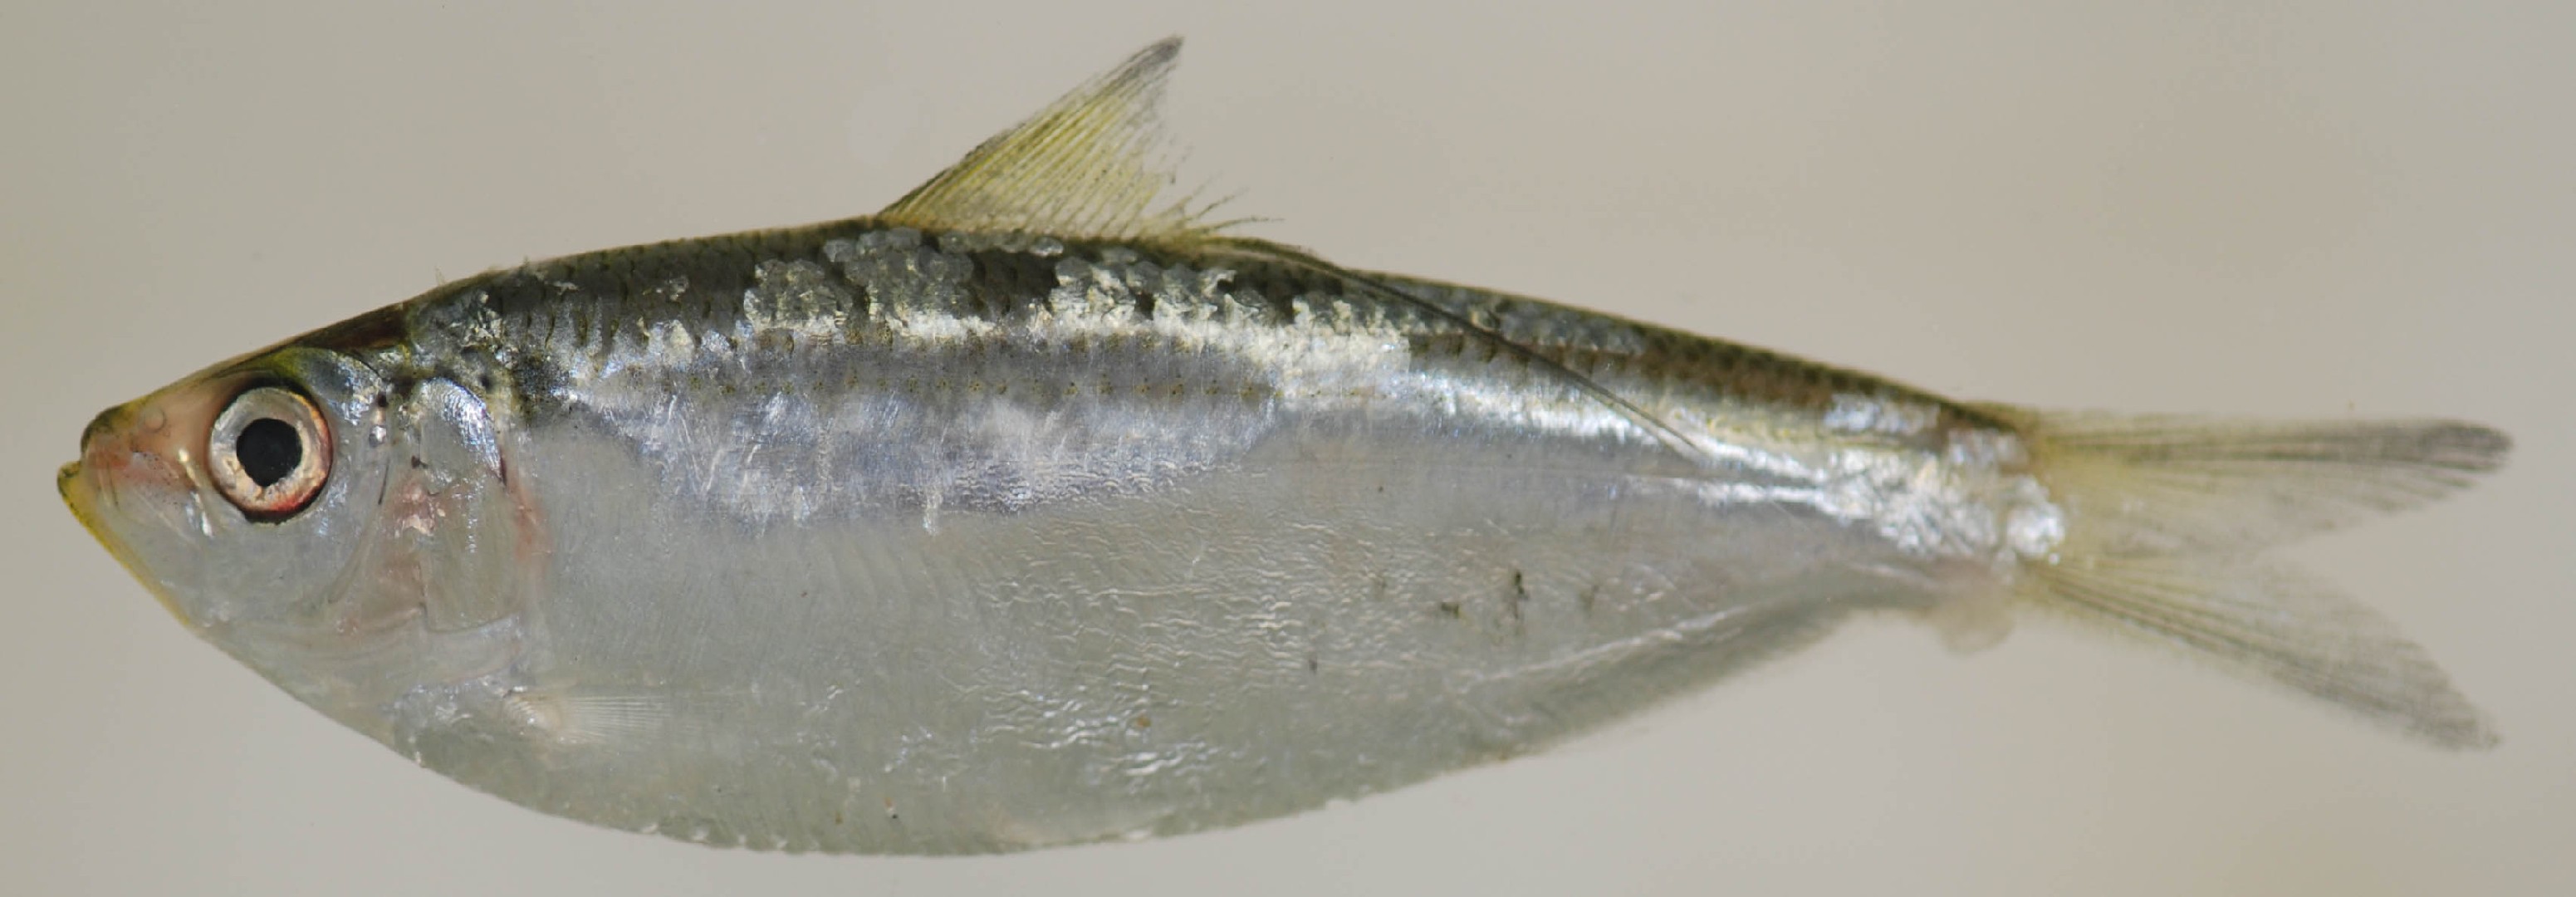 Atlantic thread herring (Opisthonema oglinum) - Picture Fish